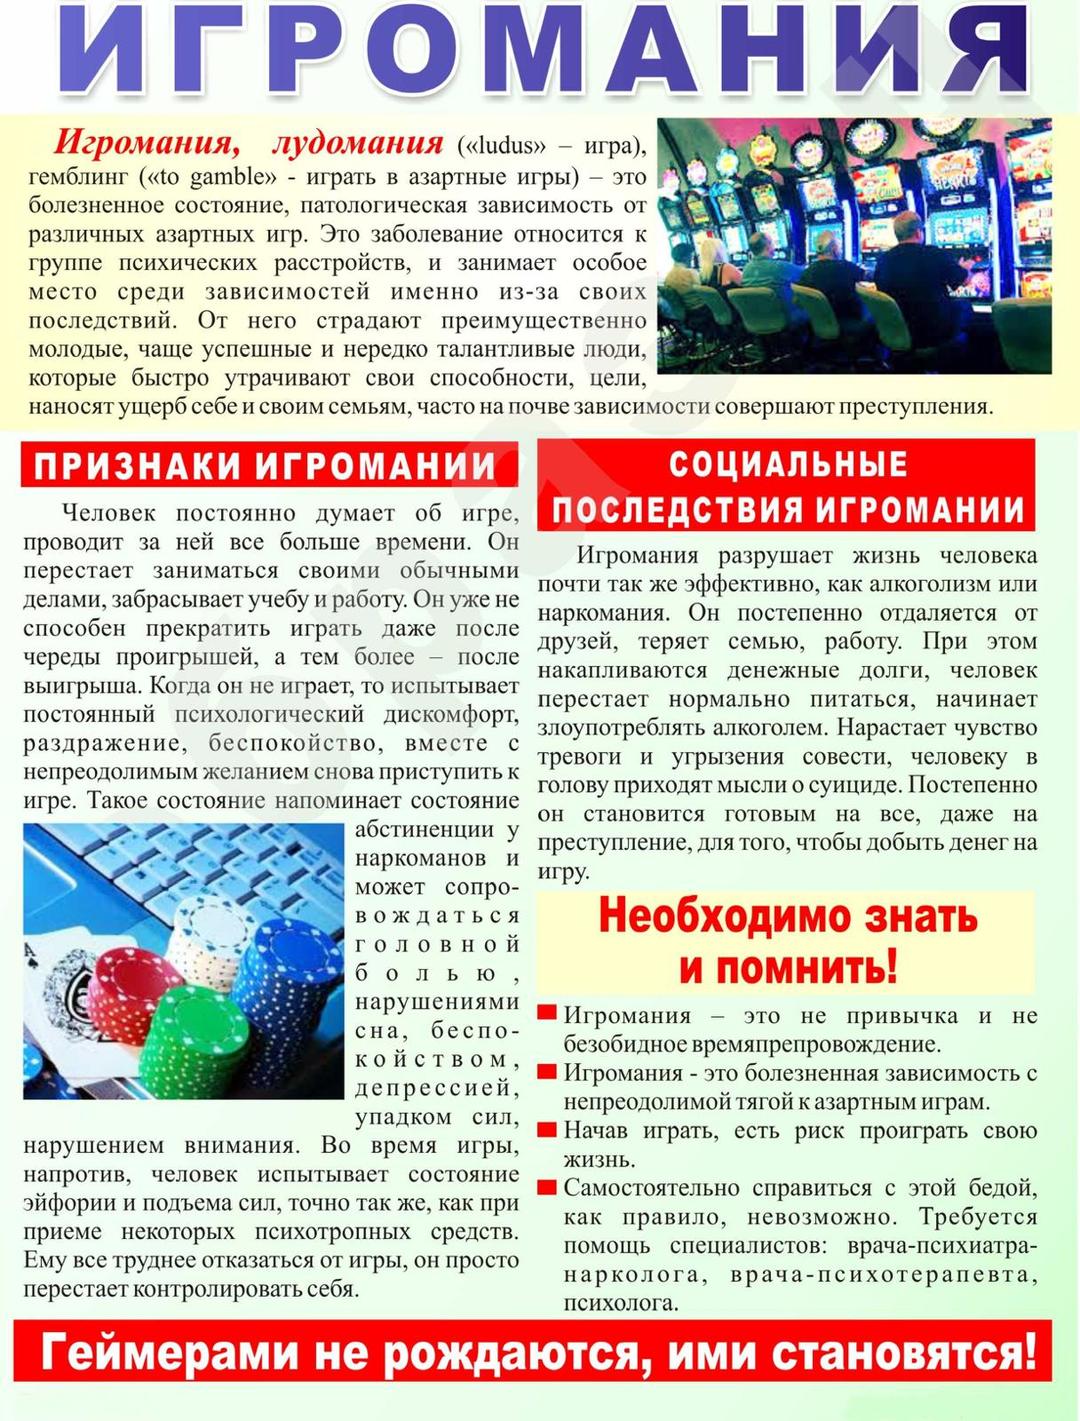 Лечение игромании - Цена реабилитация игроманов в Киеве | Profi-Detox